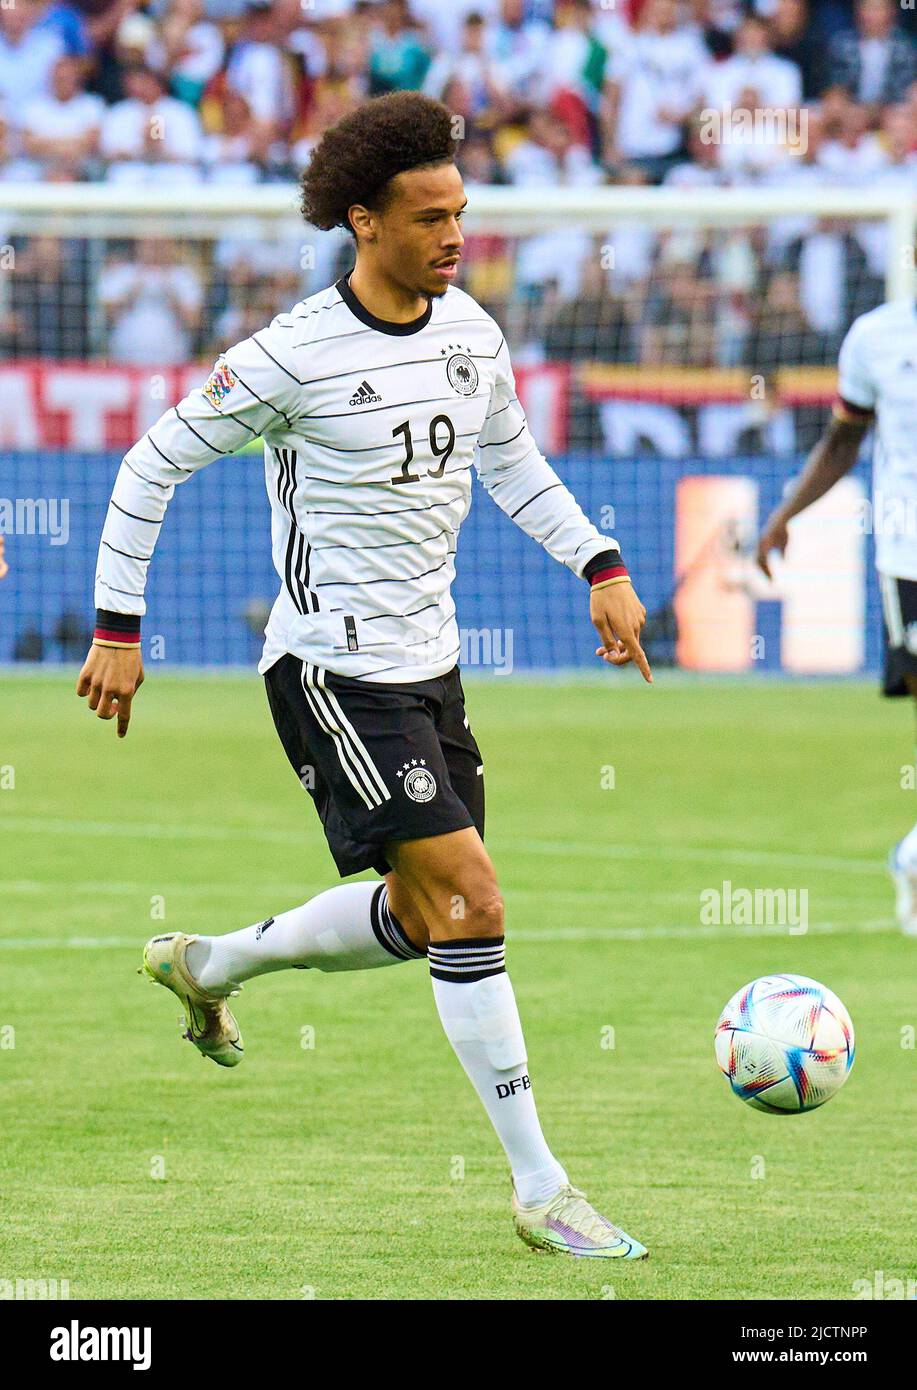 Leroy SANE, DFB 19 nella UEFA Nations League 2022 partita GERMANIA - ITALIA 5-2 nella stagione 2022/2023 giugno 14, 2022 a Mönchengladbach, Germania. © Peter Schatz / Alamy Live News Foto Stock